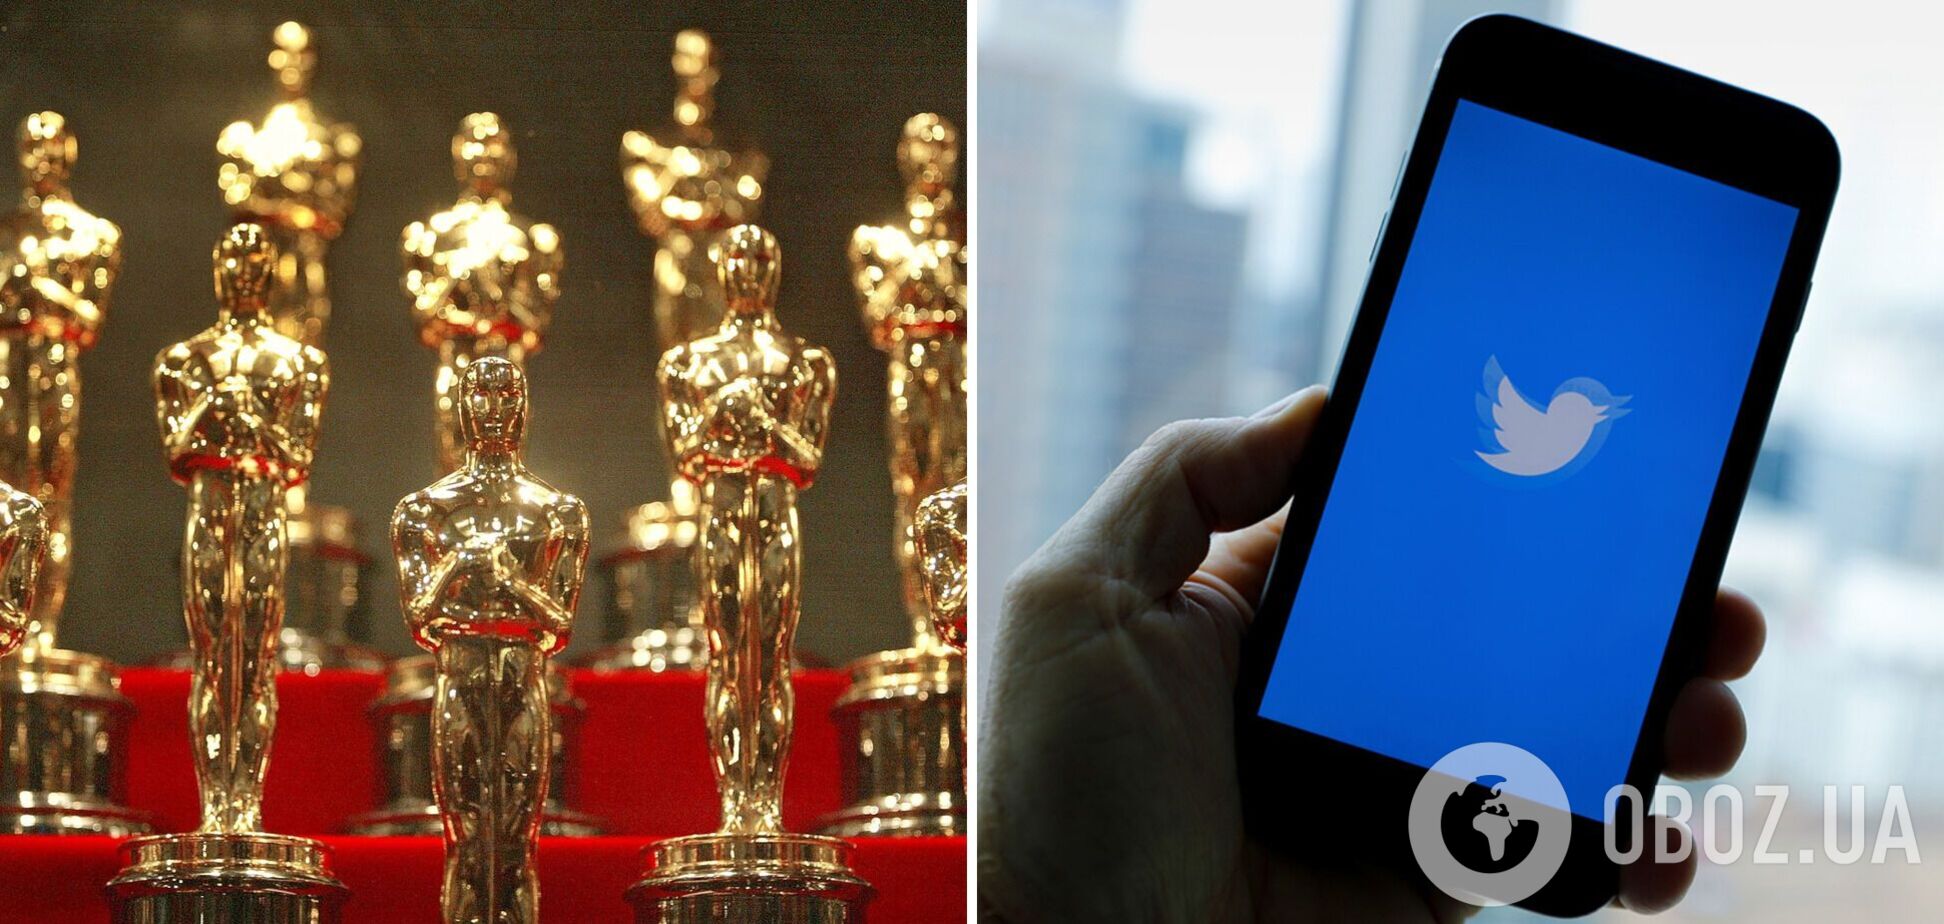 'Оскар' проведет специальное голосование через Twitter